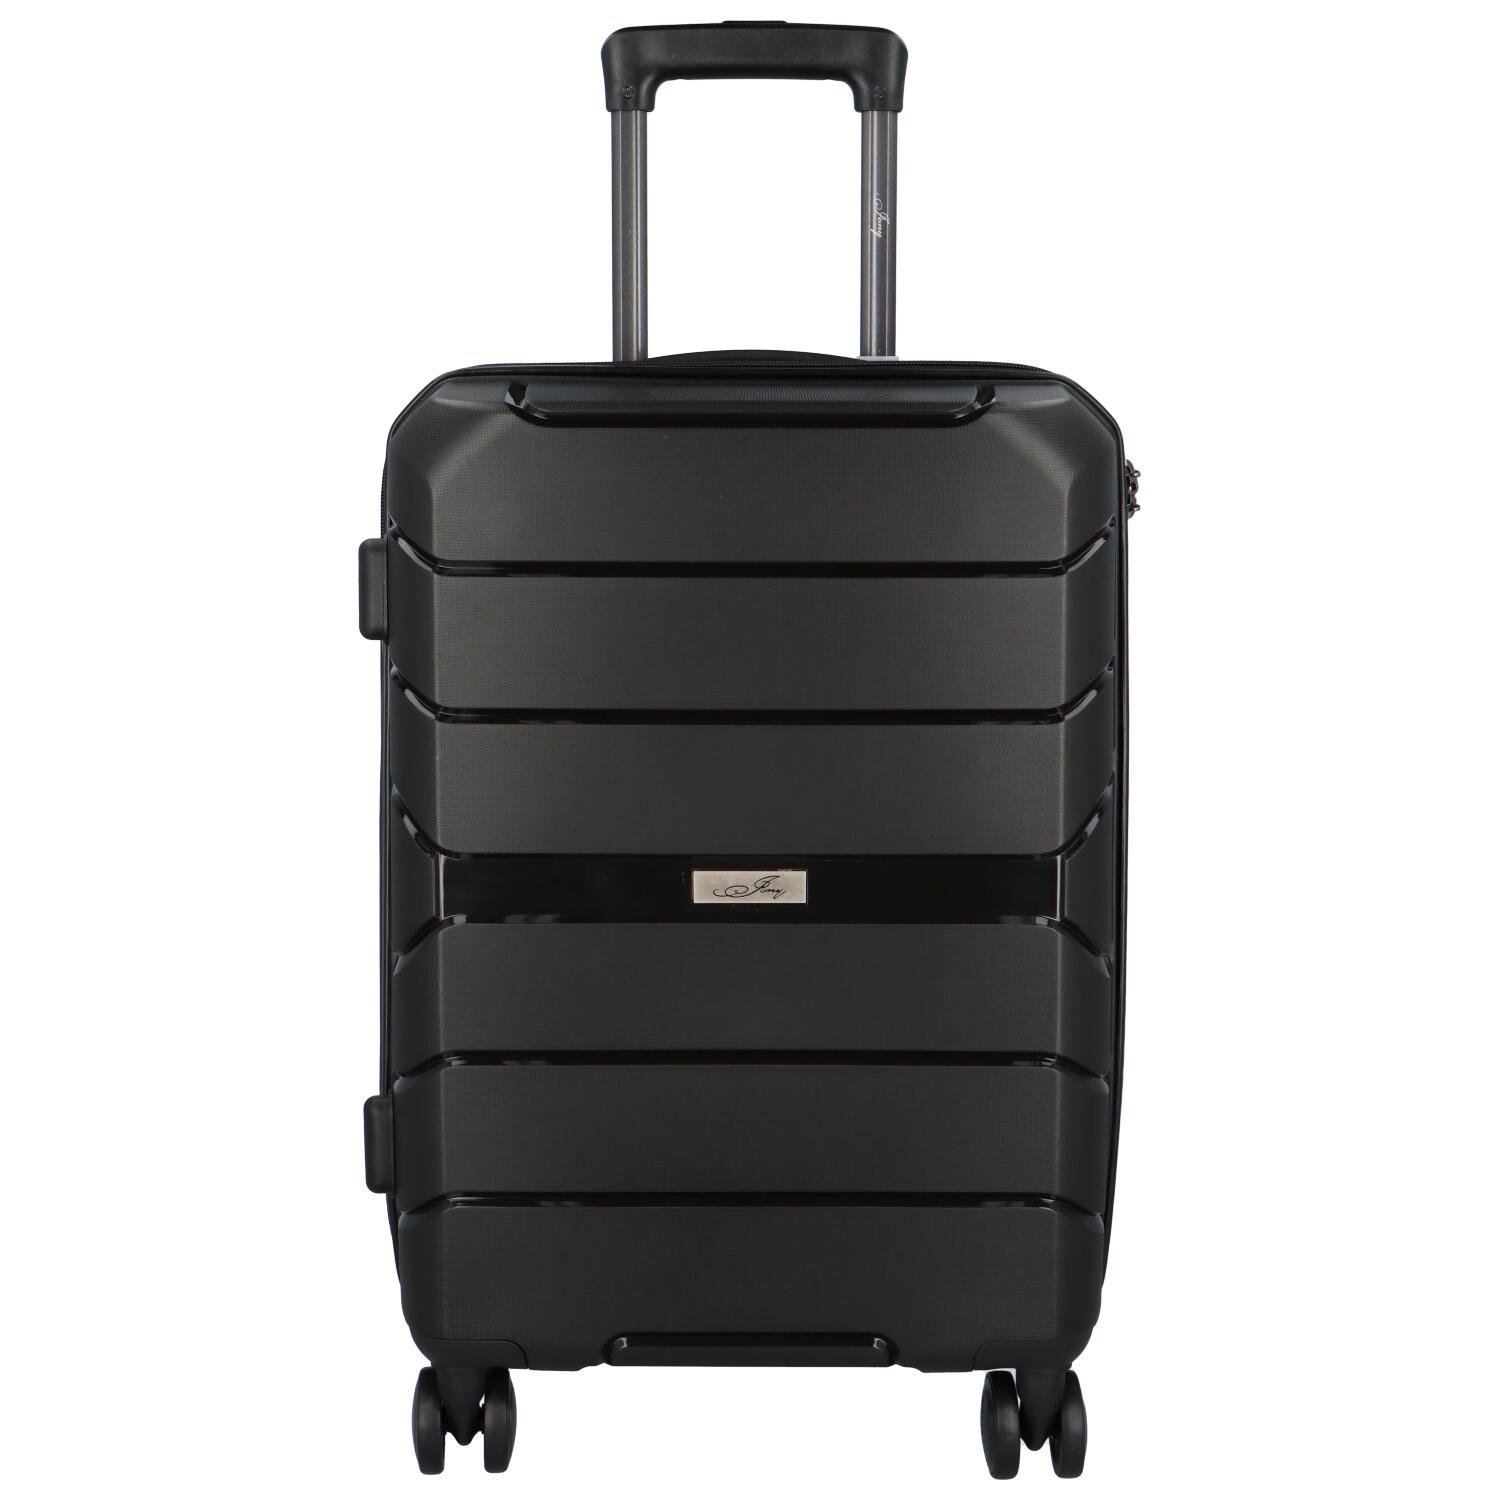 Cestovní plastový kufr Franco velikosti S, černý